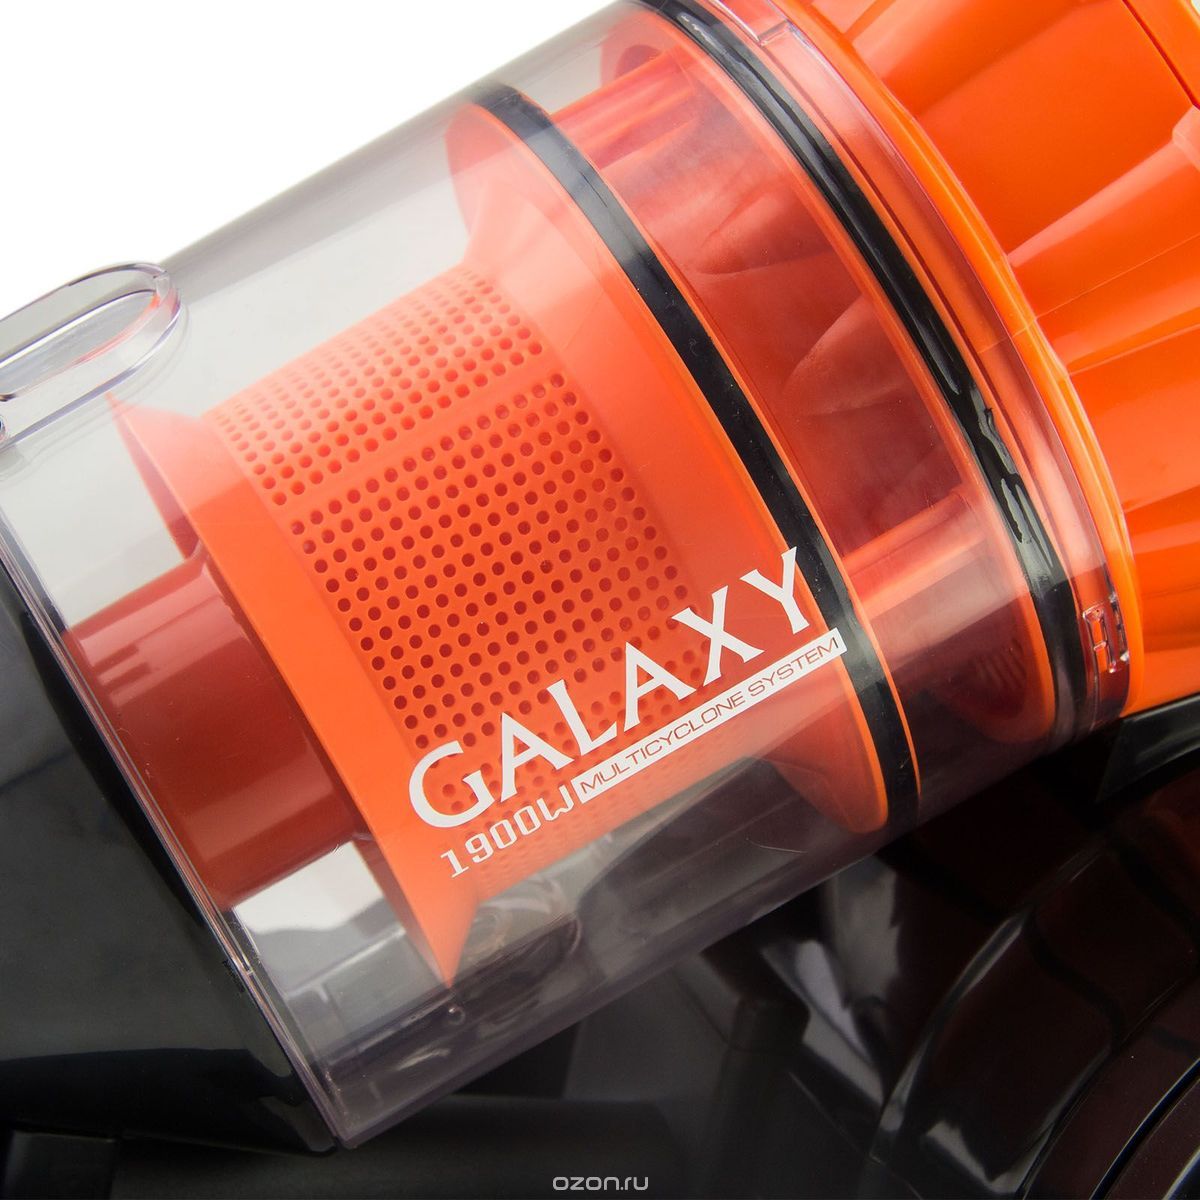  Galaxy GL 6253, Black Orange